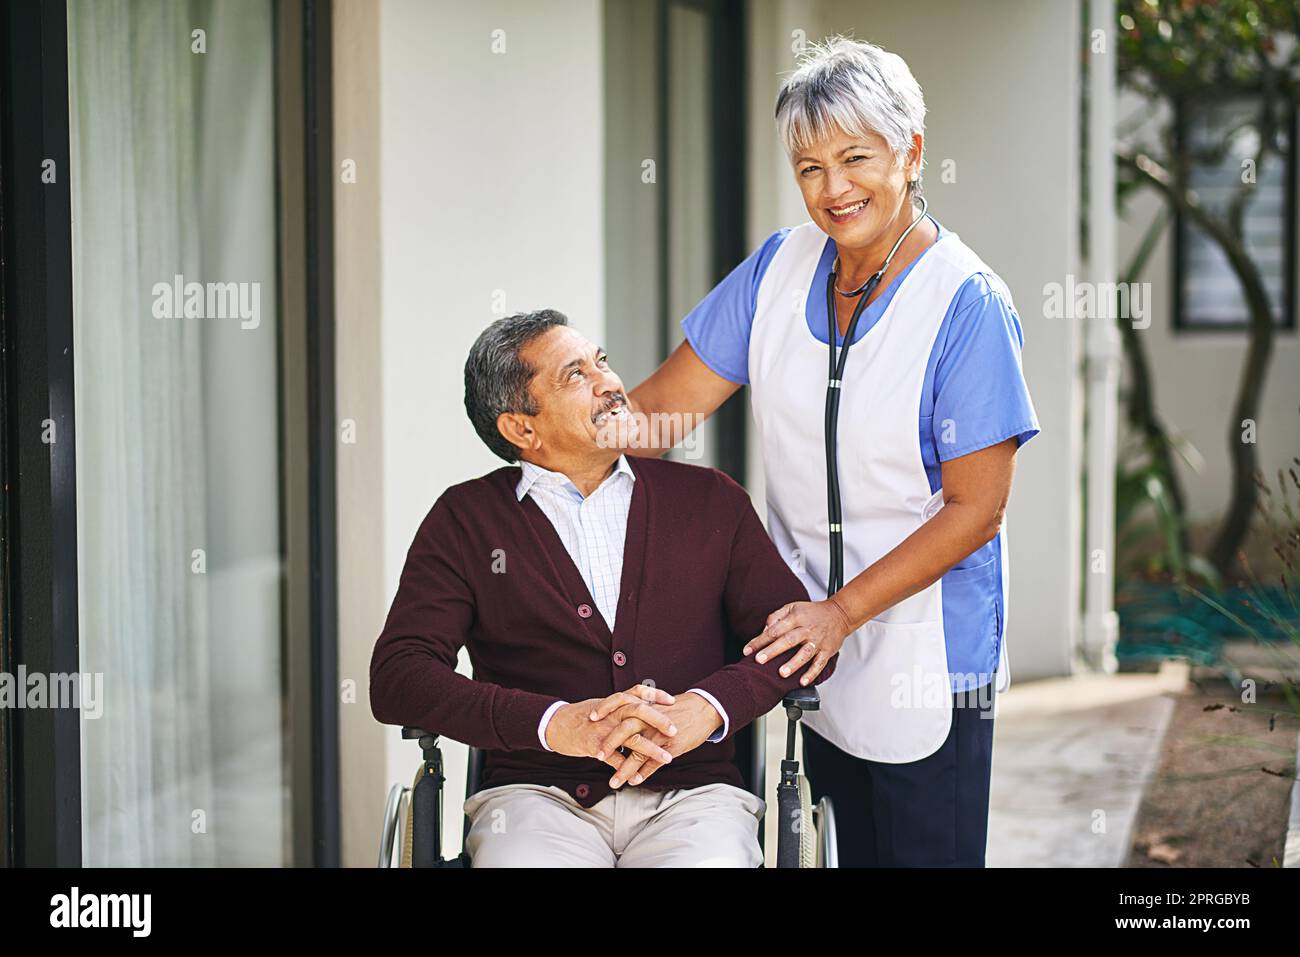 Freundlichkeit und Mitgefühl gehen einen langen Weg. Ein älterer Mann im Rollstuhl wird von einer Krankenschwester in einem Altersheim betreut. Stockfoto